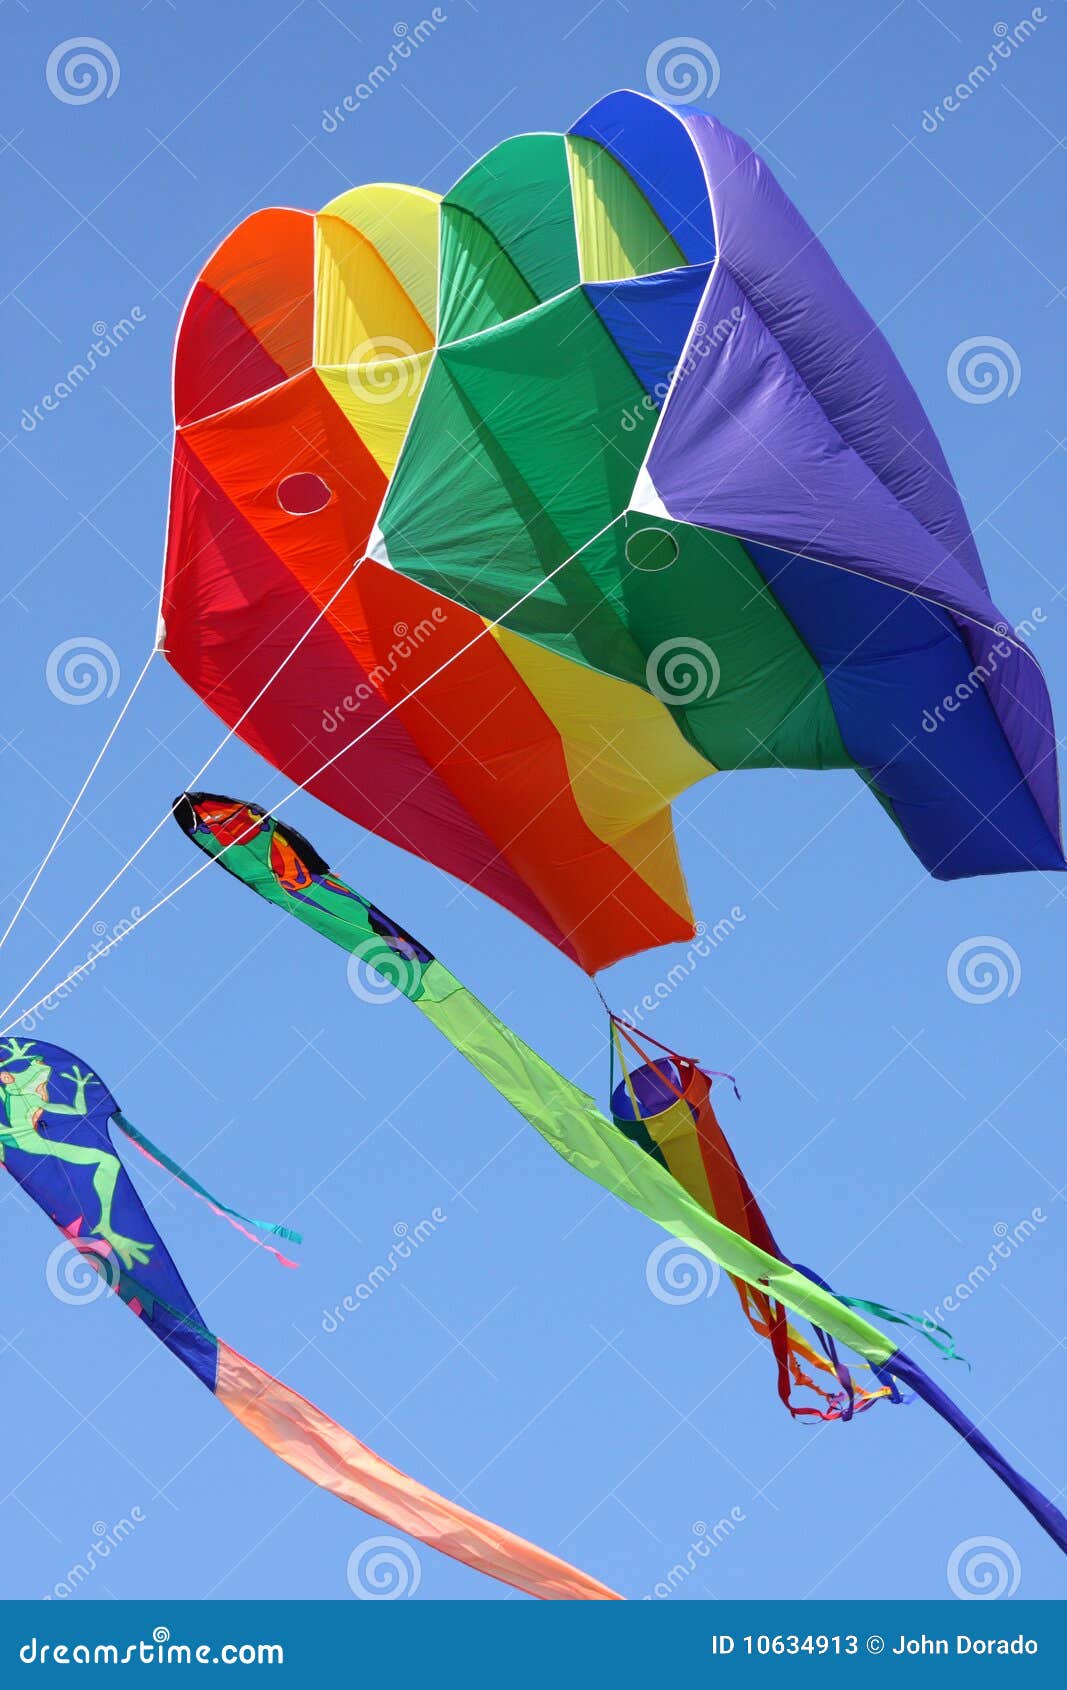 colorful parasail kite